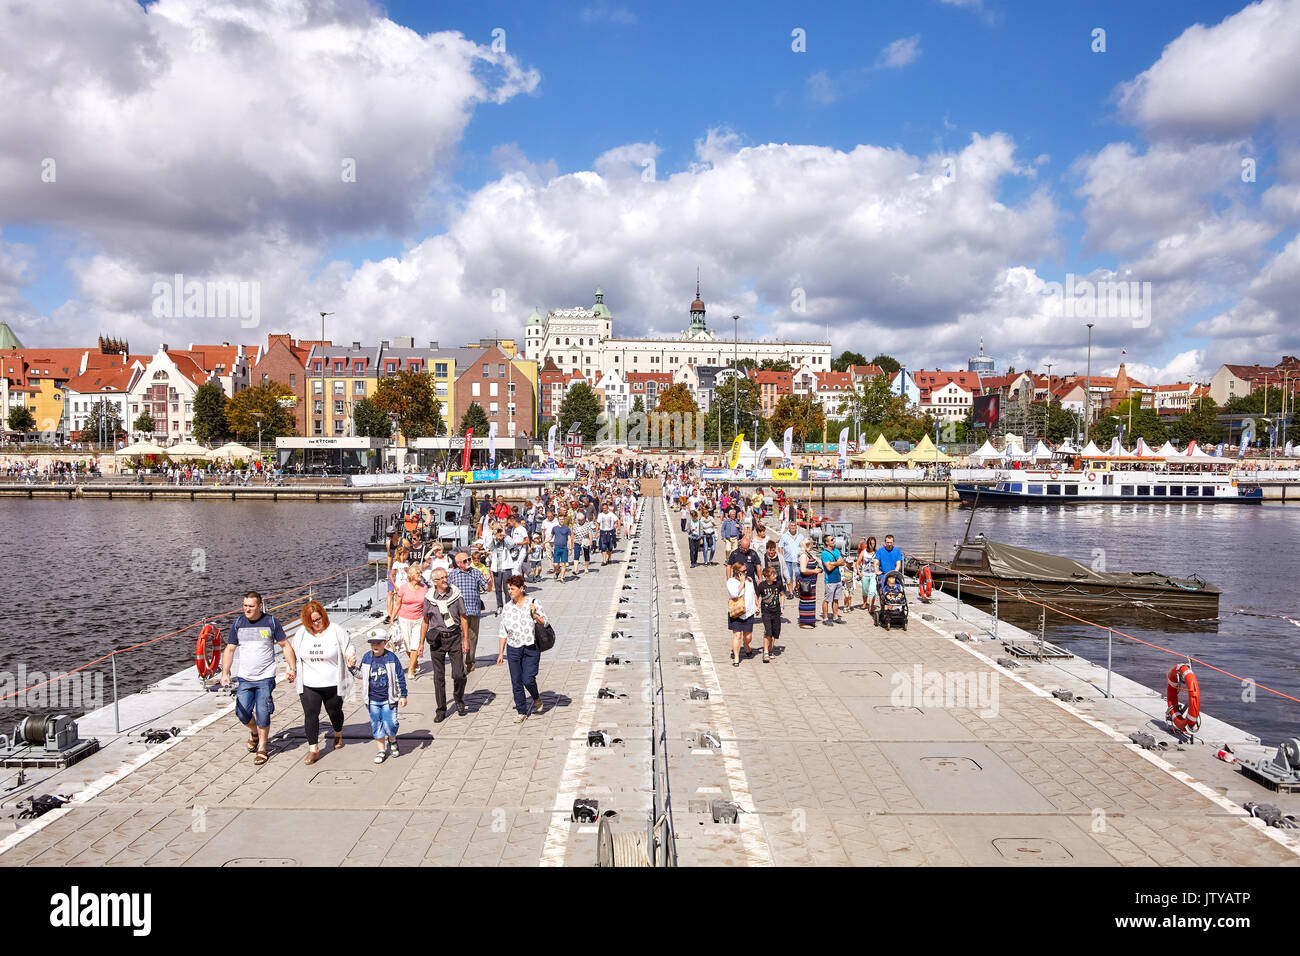 Szczecin, Polonia - Agosto 06, 2017: Los visitantes cruzar el río Oder con puente flotante militar durante el final de las Regatas de Grandes Veleros 2017. Foto de stock